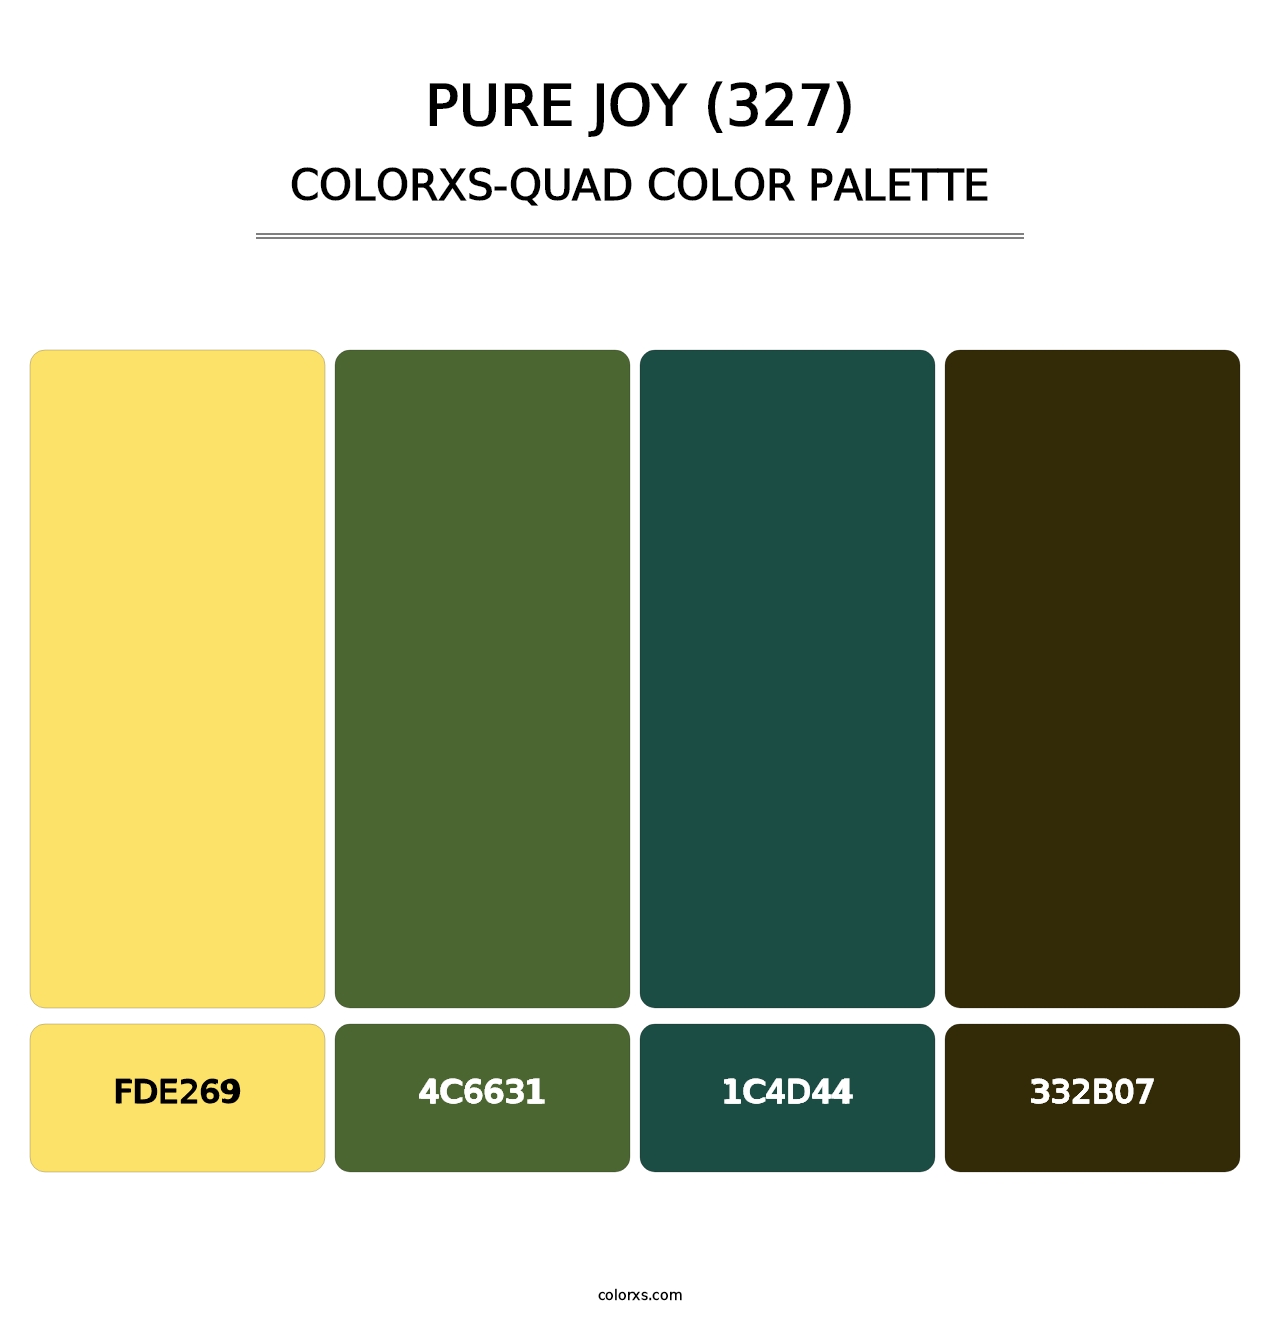 Pure Joy (327) - Colorxs Quad Palette